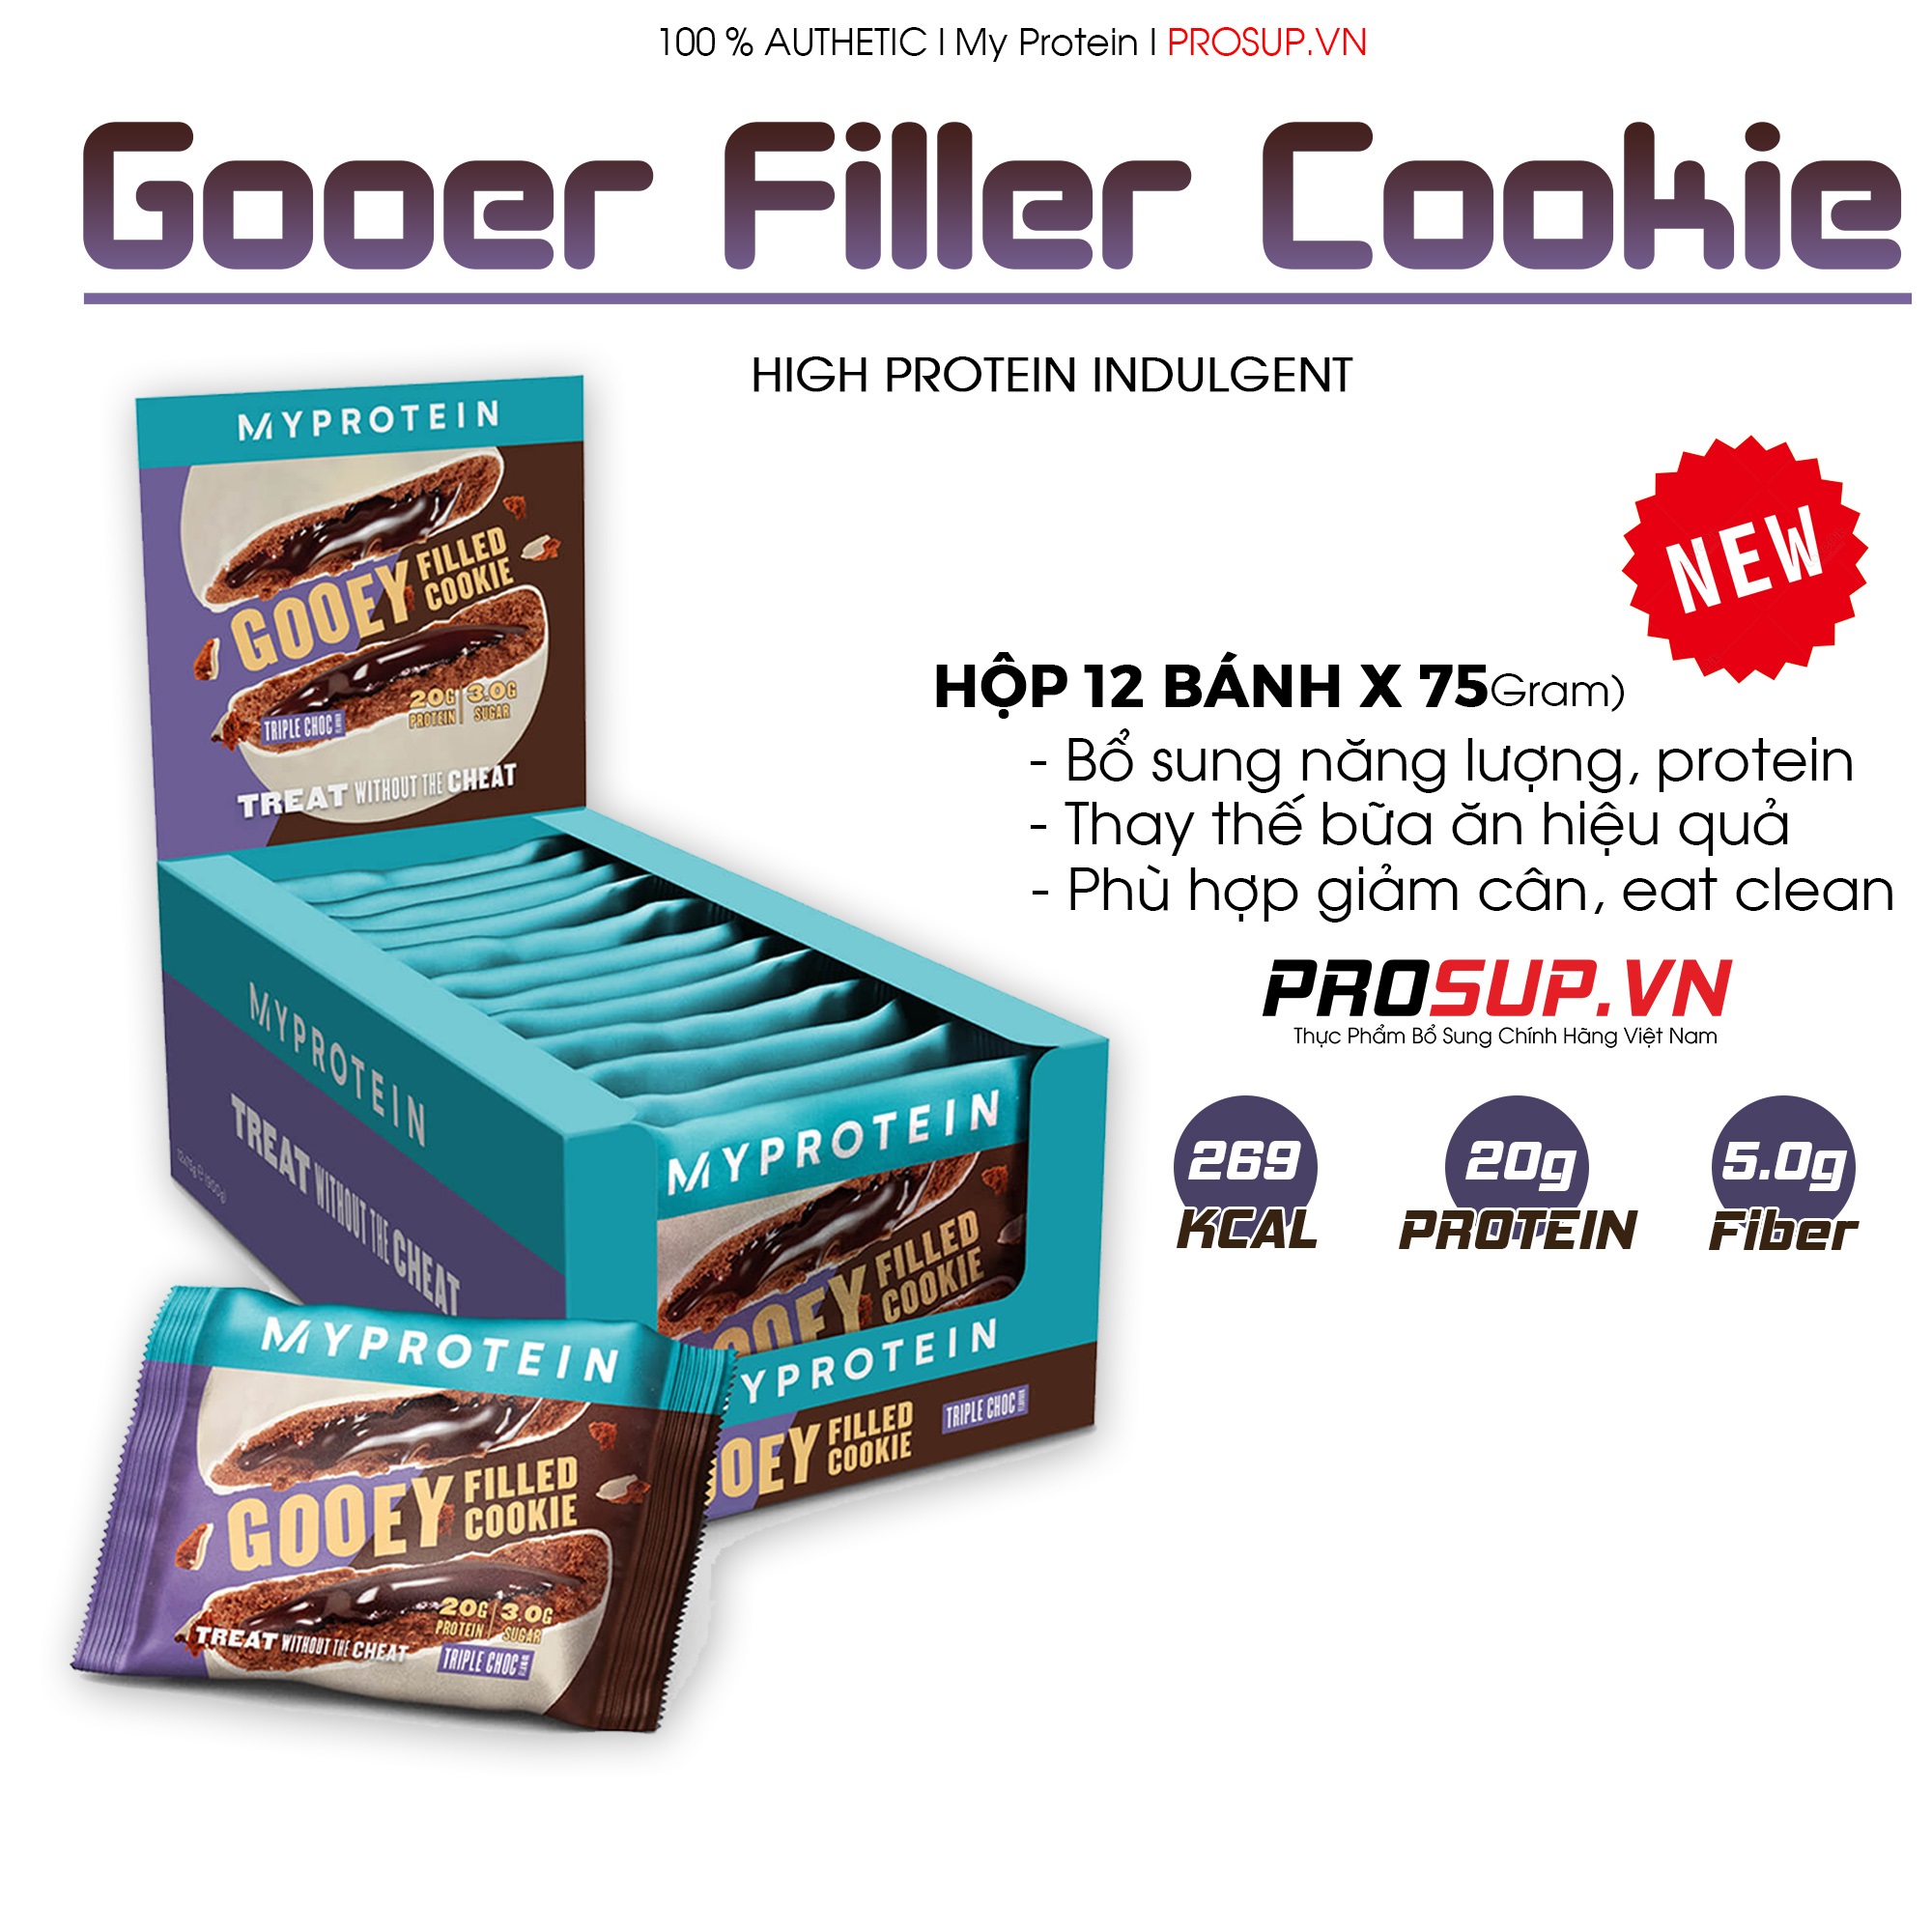 Gooey Filled Cookie - My Proteinbánh Protein Nhân Tan Chảy Siêu Ngon